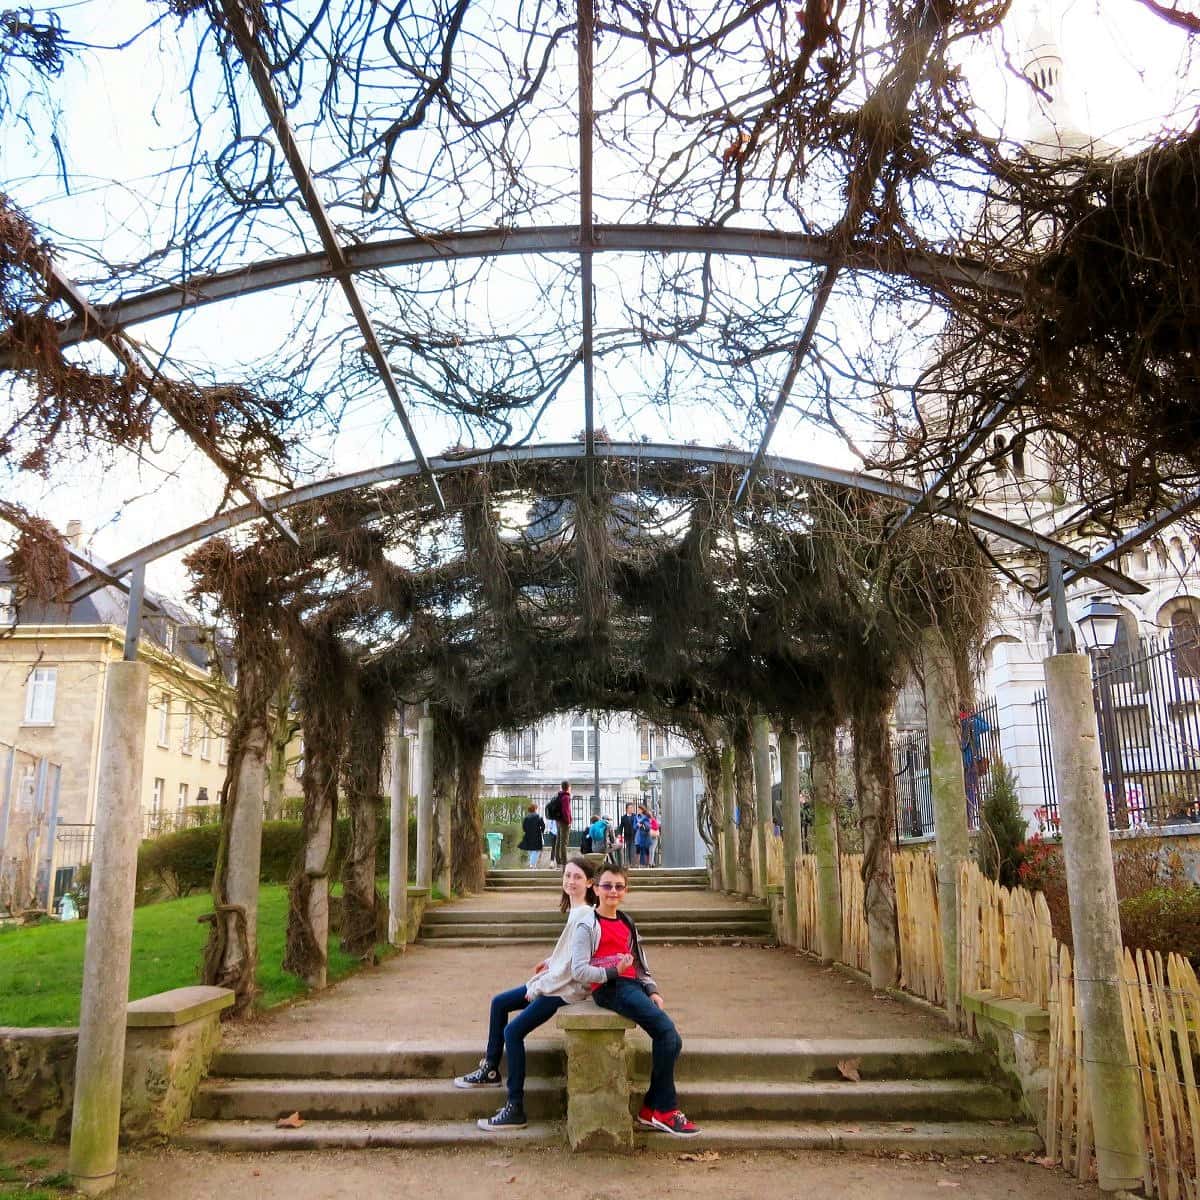 Parc de la Turlure in Montmartre, Paris with kids